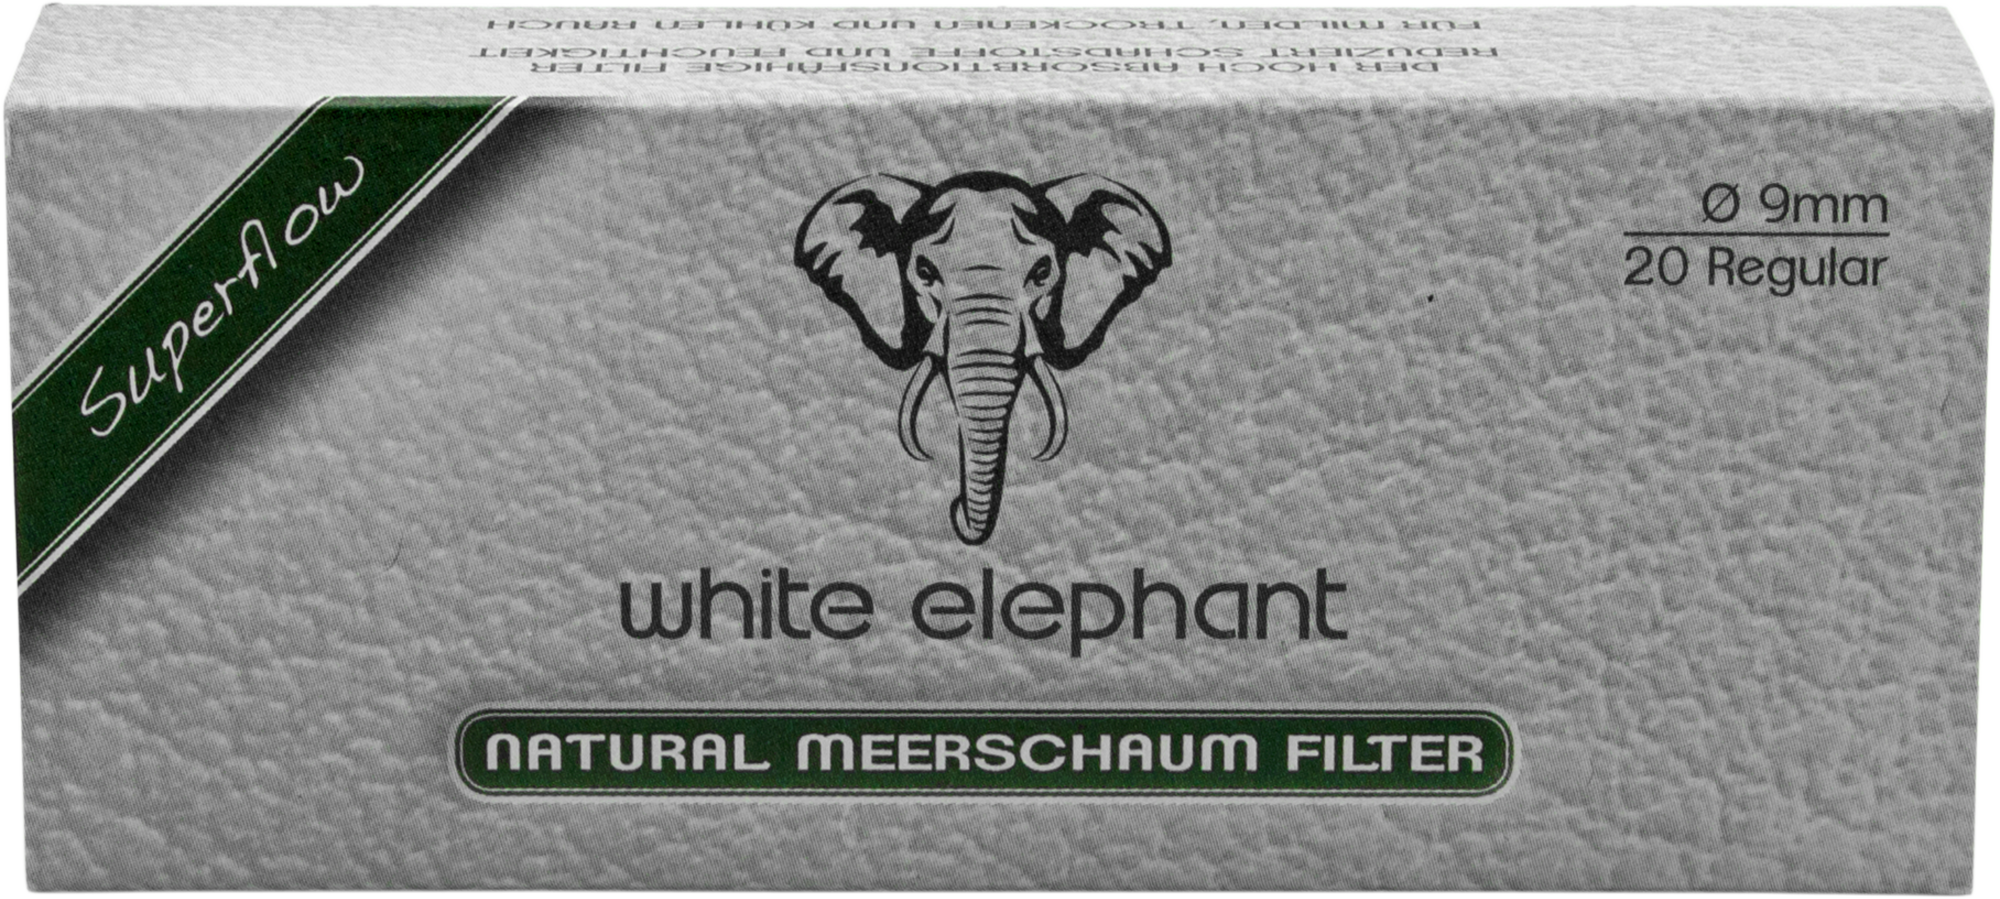 White Elephant 20 Natural Meerschaum Filter 9mm (20x)